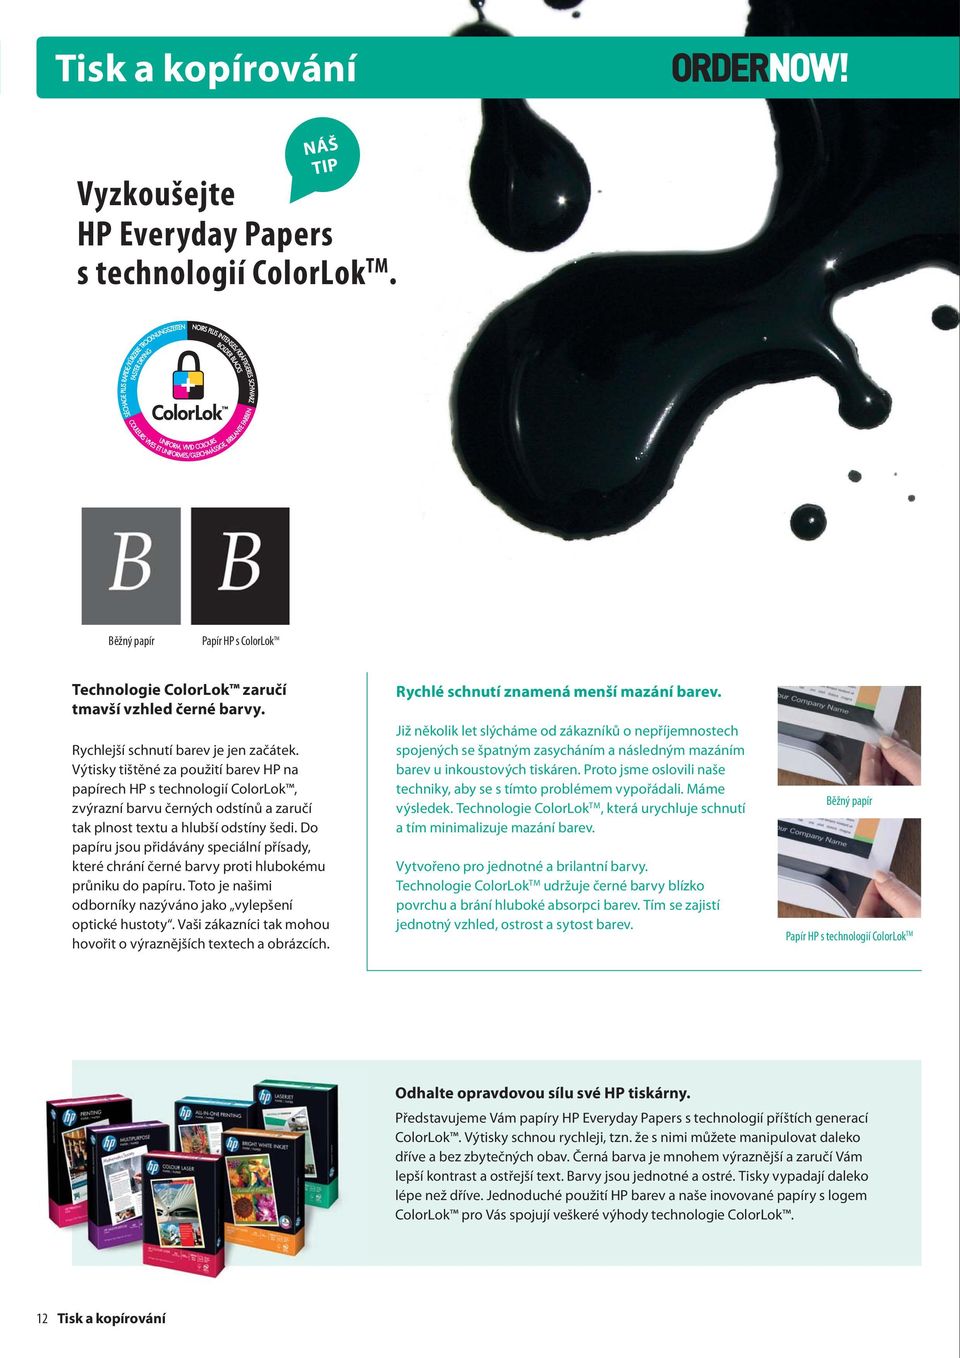 Běžný papír Papír HP s ColorLok TM Technologie ColorLok zaručí tmavší vzhled černé barvy. Rychlejší schnutí barev je jen začátek.